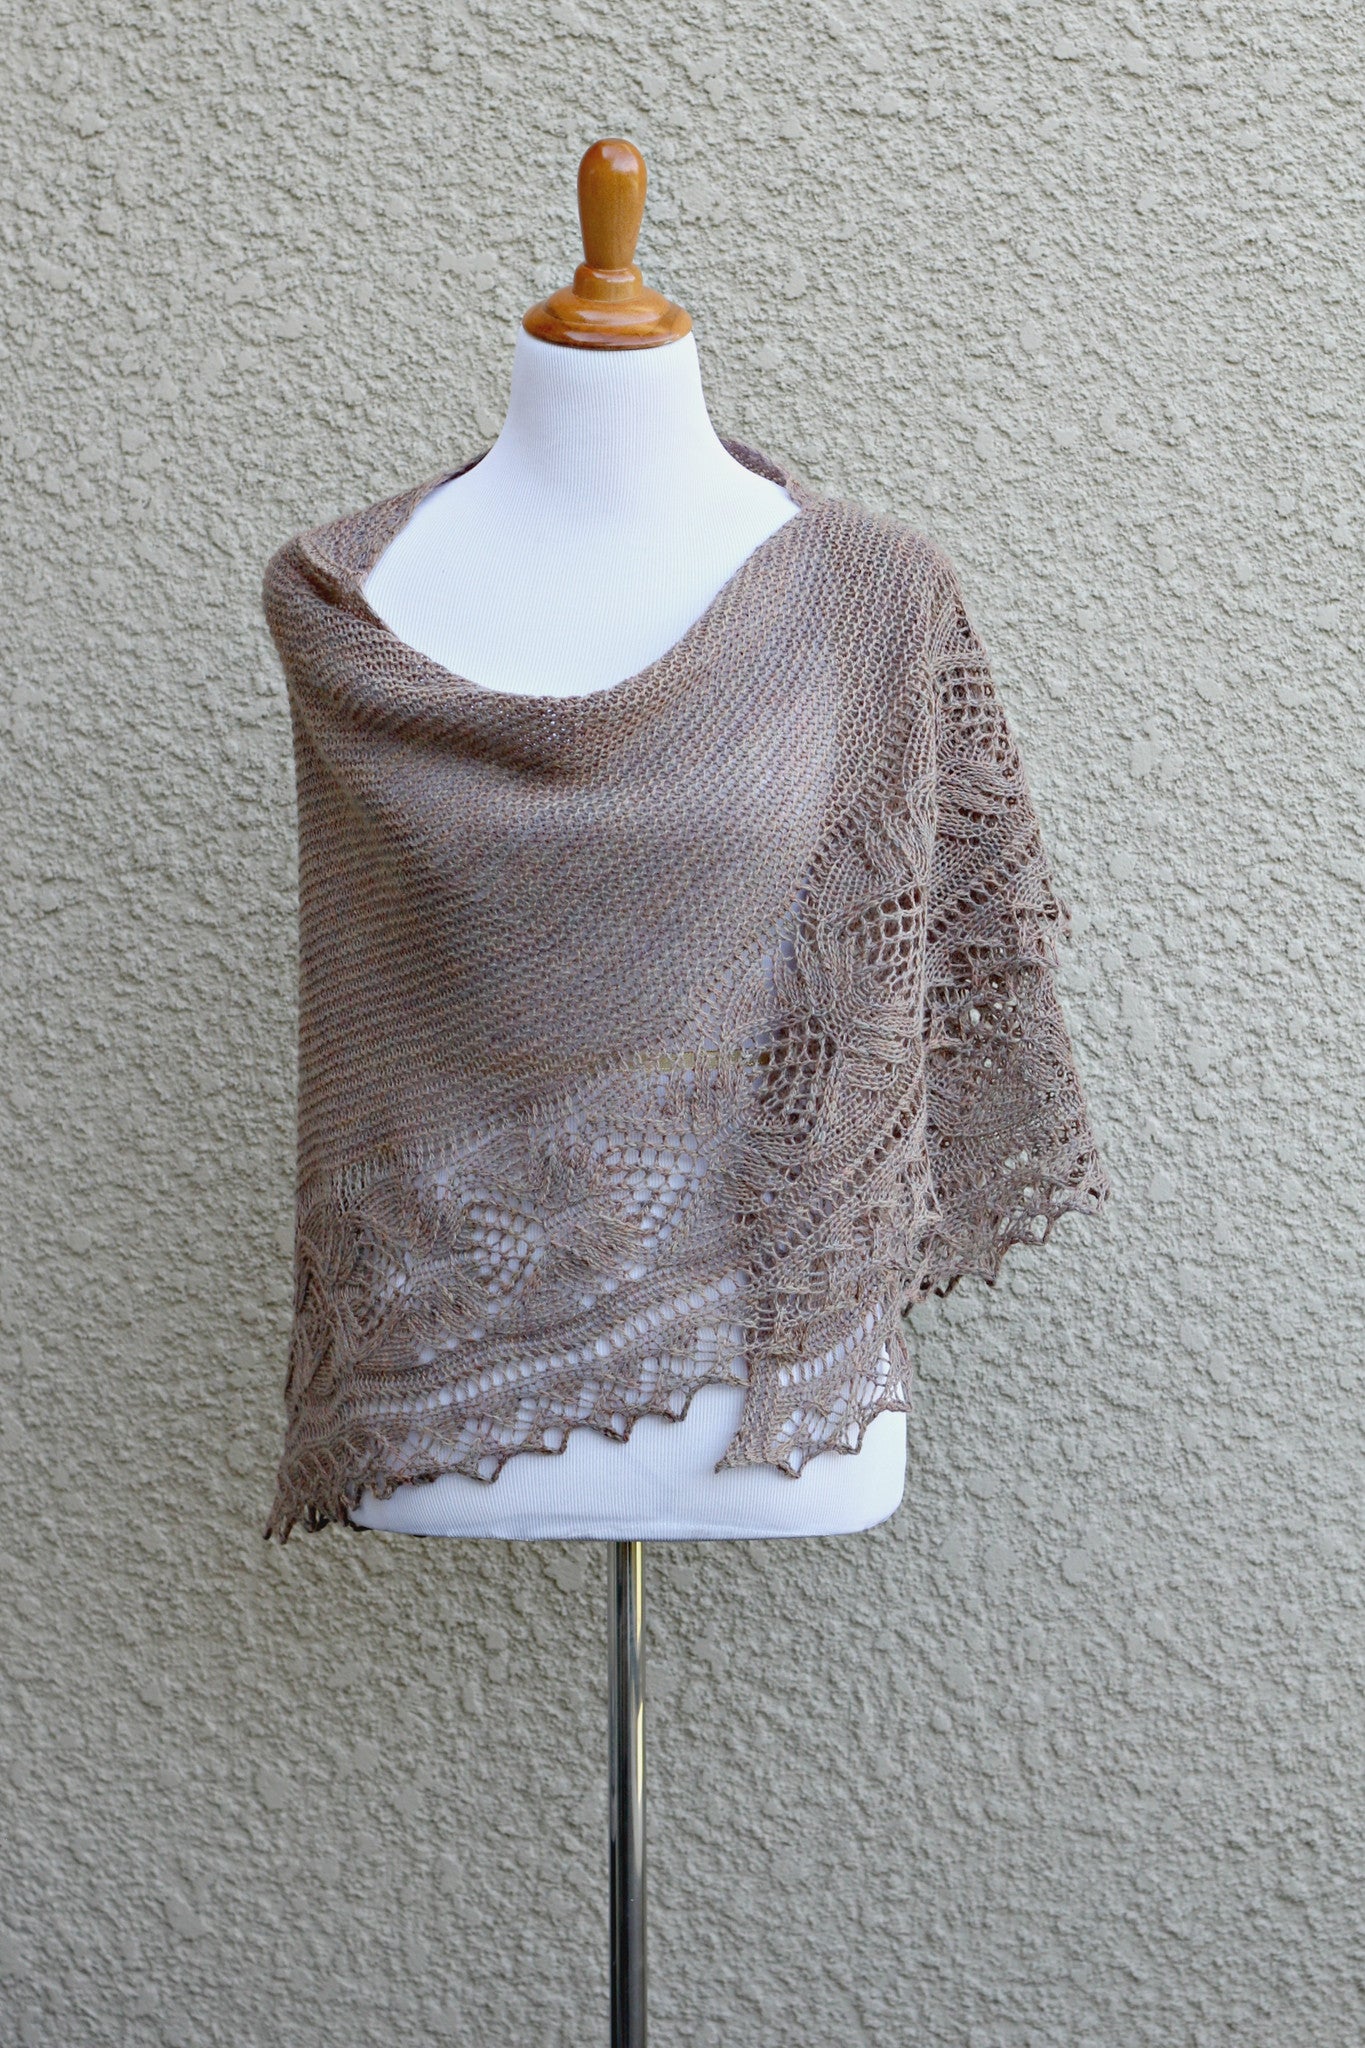 Knit shawl pattern